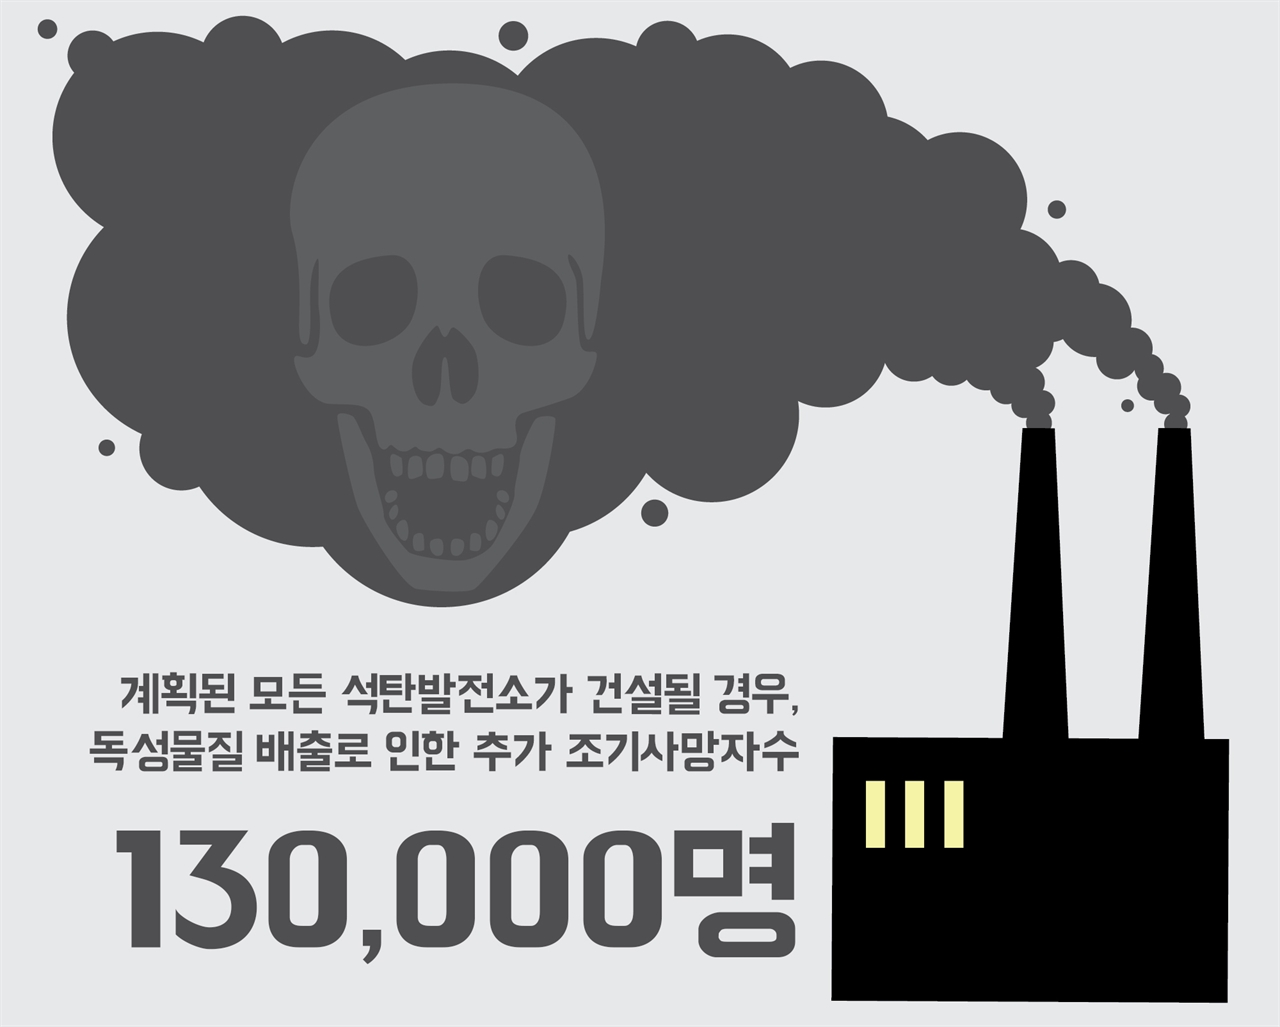 추가 건설되는 석탄 발전소의 독성물질 배출로 인한 조기사망자수